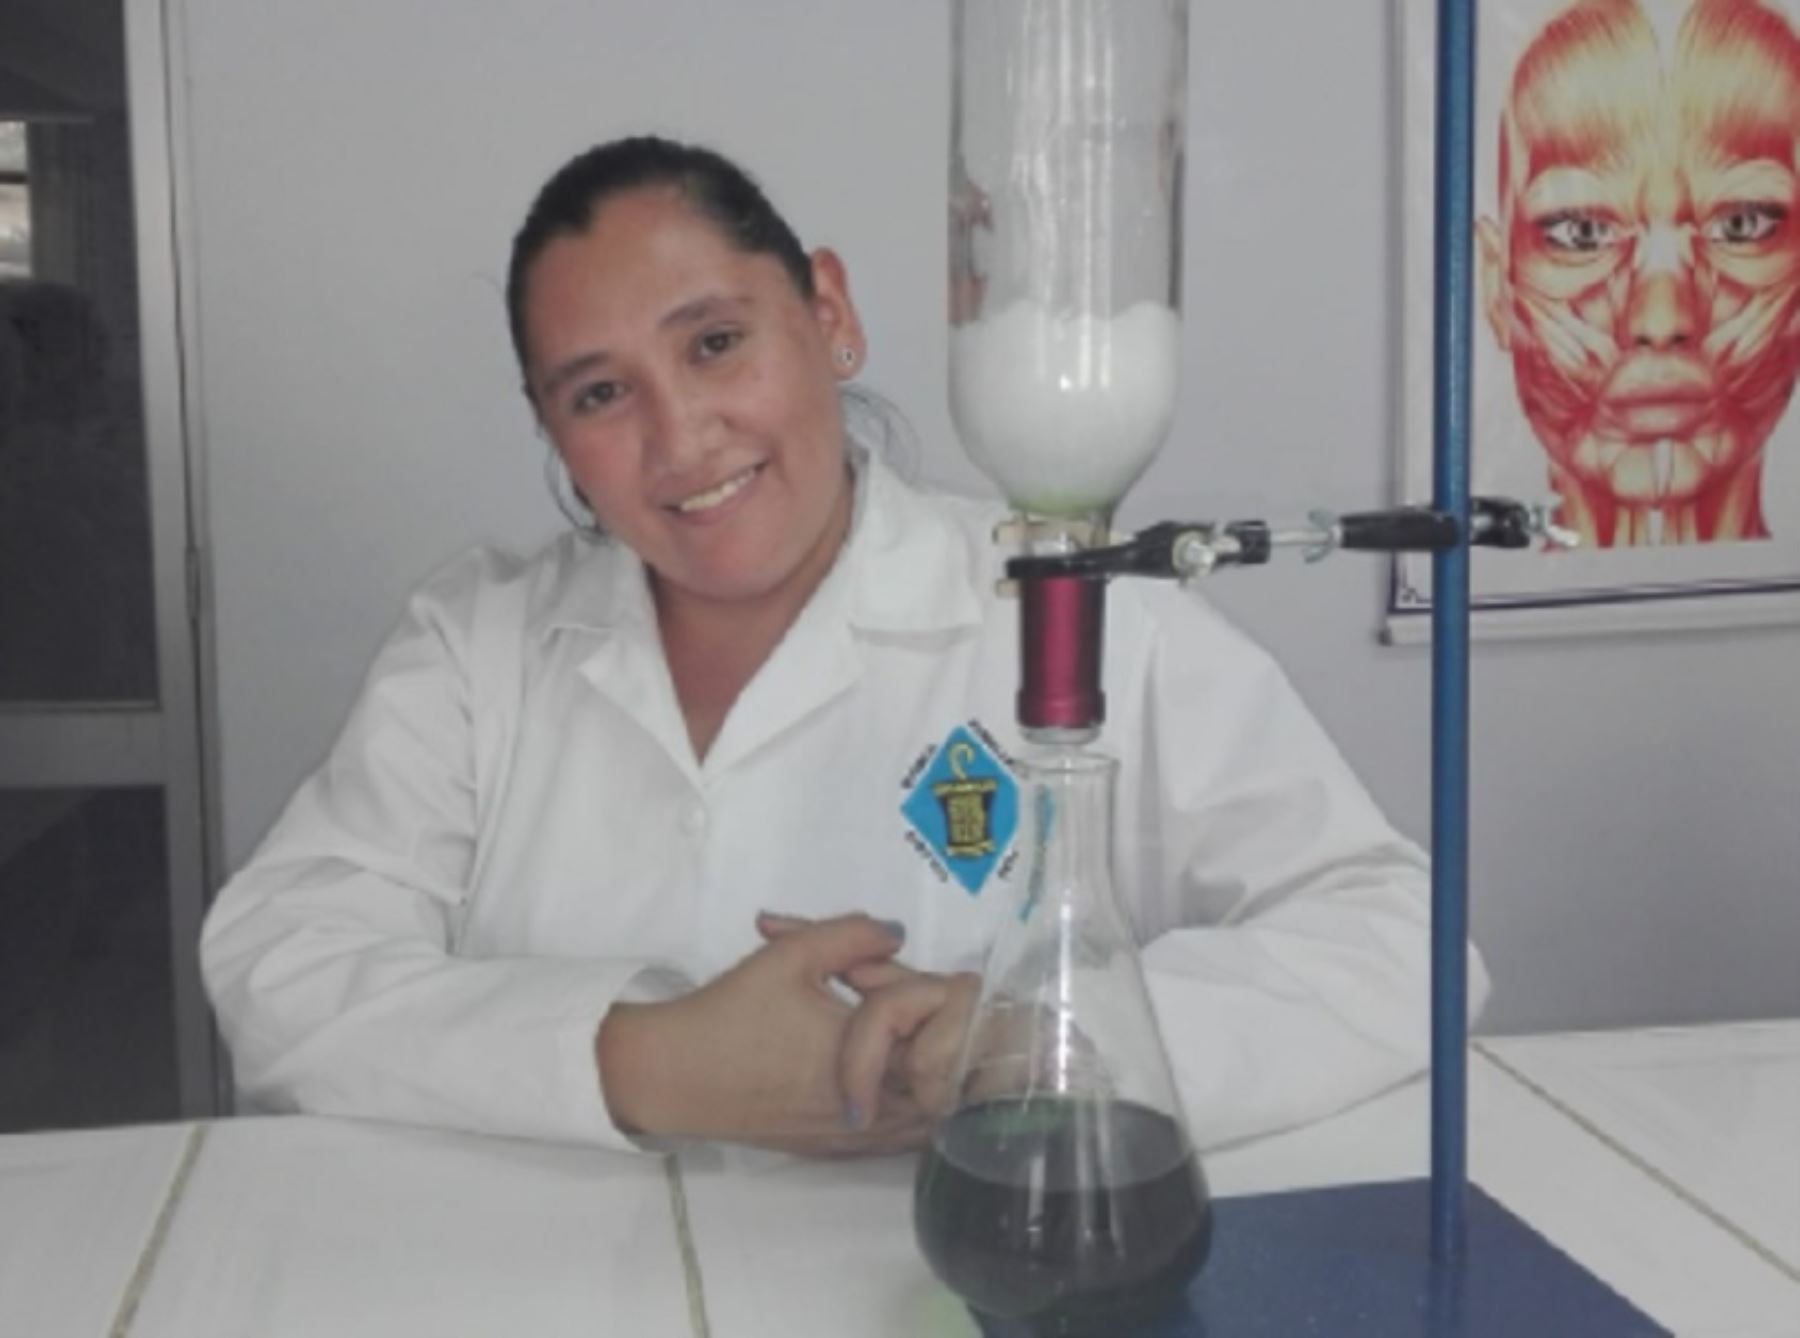 Lisett Yllanes, investigadora, innovadora y emprendedora de la región Huánuco. Foto: Facebook/Lisett Yllanes Nauca